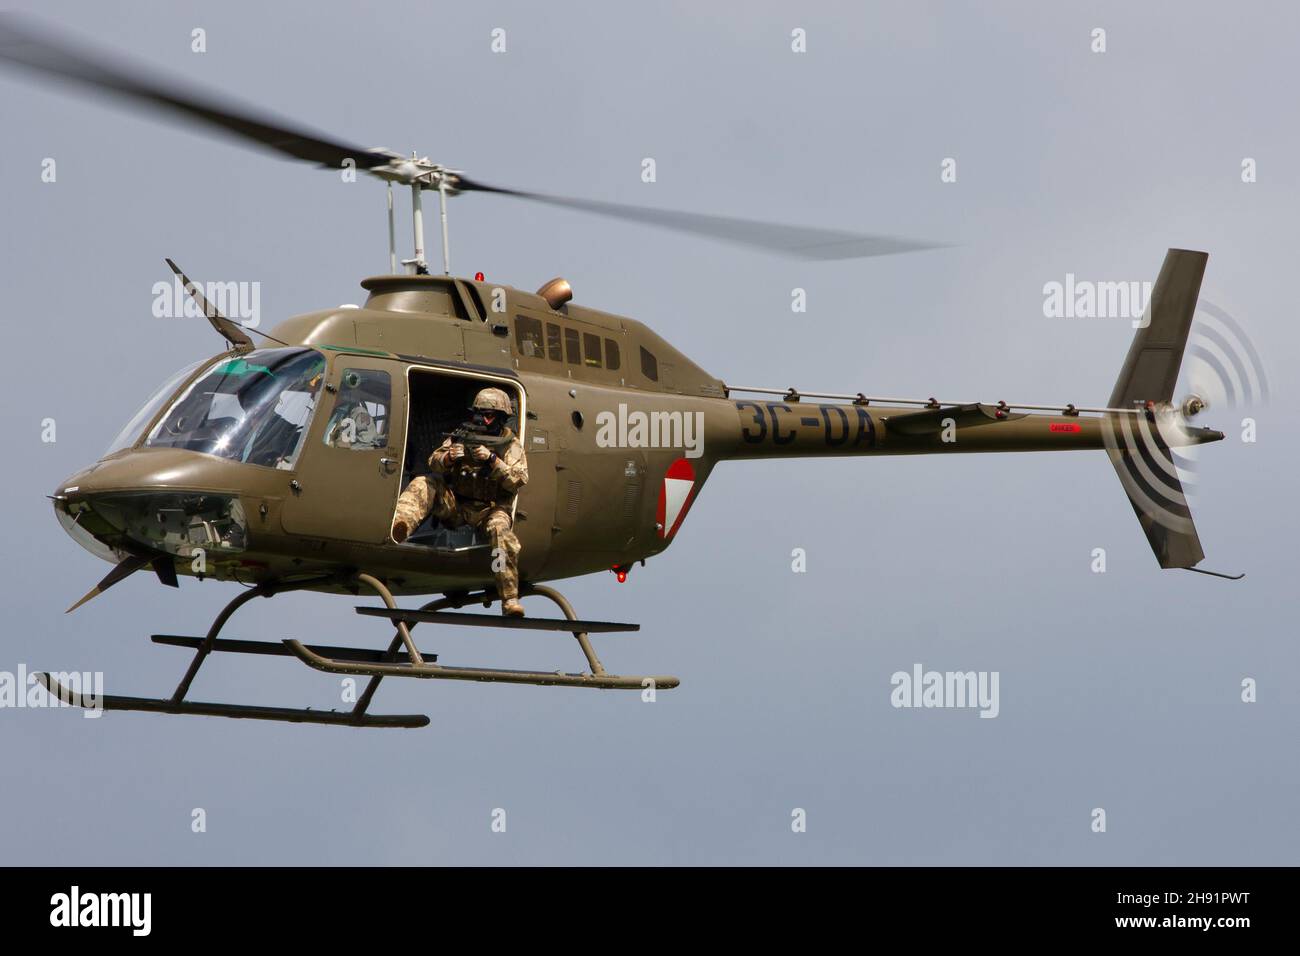 ALLENTSTEIG, ÖSTERREICH - 10. Jul 2013: Der Bell OH-58-Angriffshubschrauber der Österreichischen Luftwaffe mit Türbeschützer in der Luft während eines Kampftrainings in Allentste Stockfoto